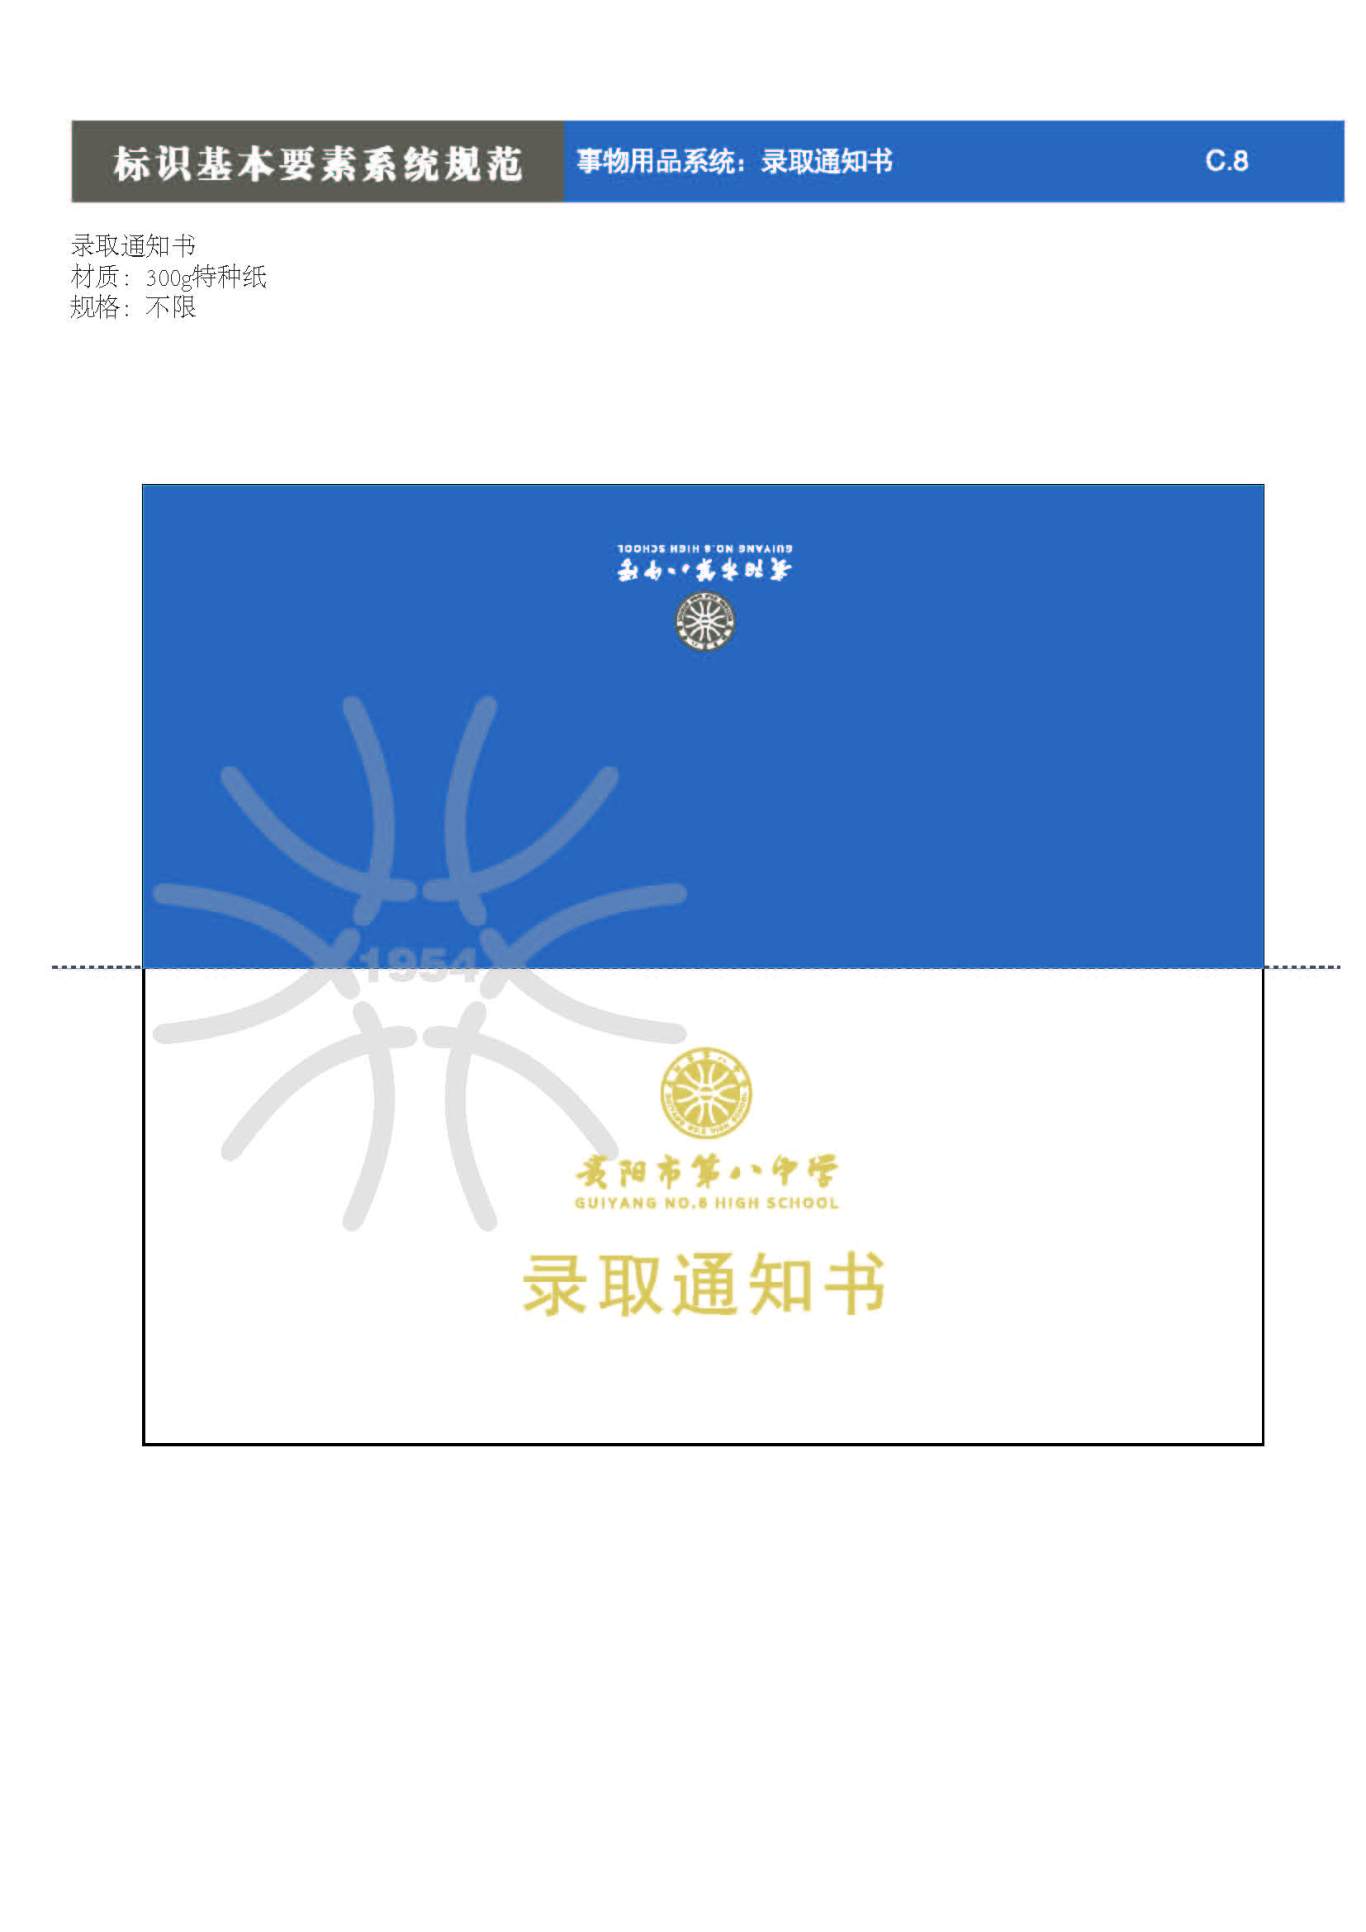 贵阳第八中学Logo、VIS设计图62